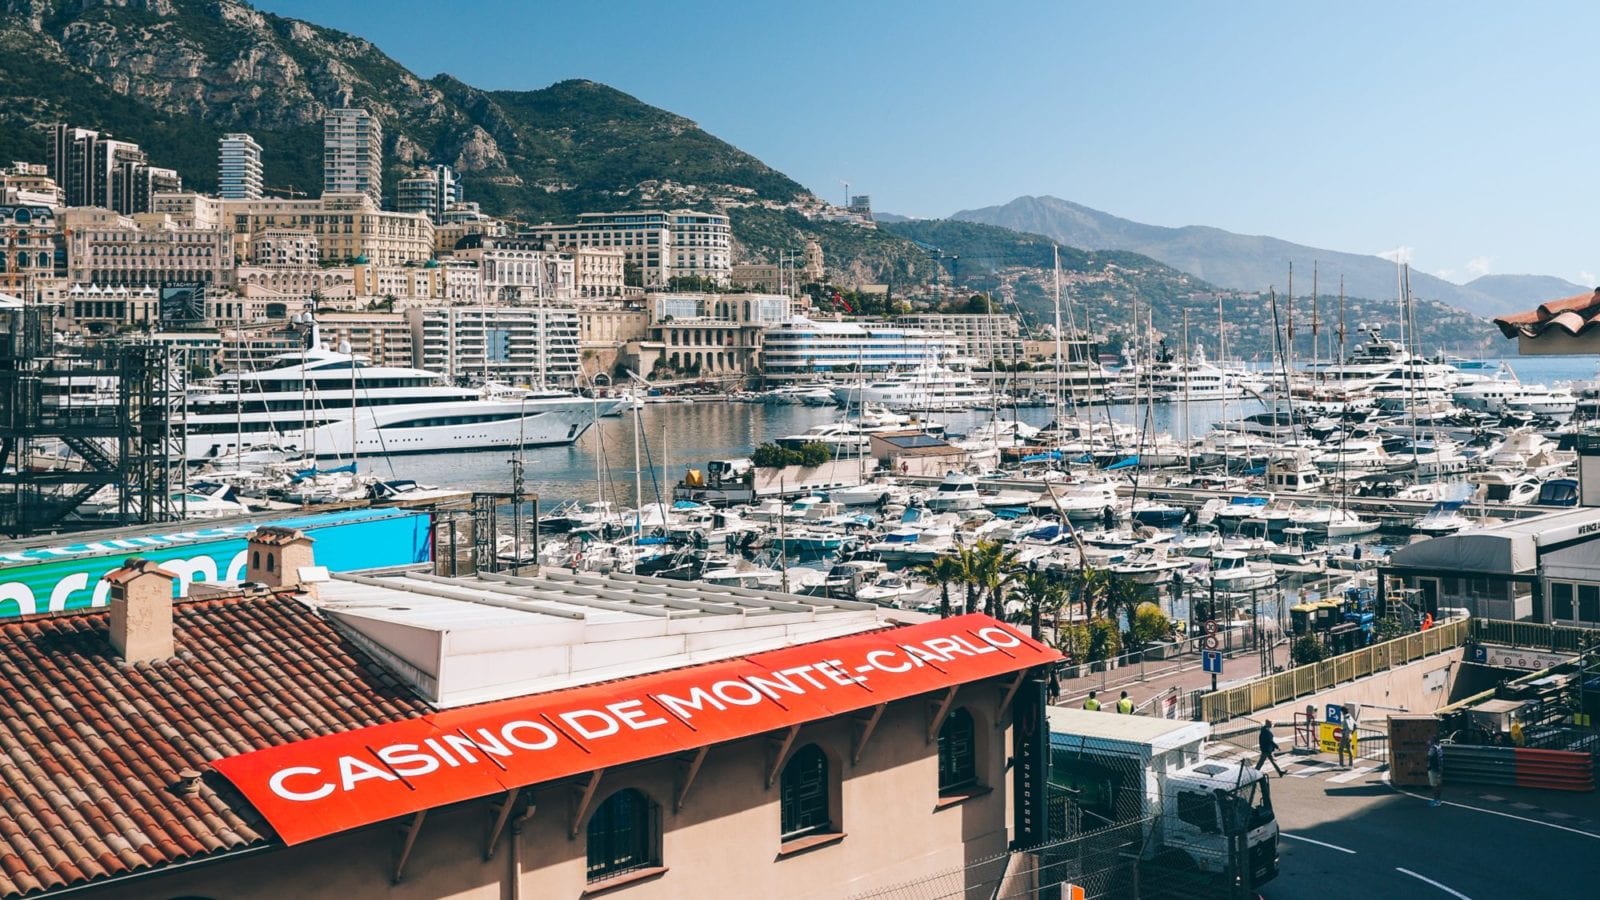 2021 Monaco GP